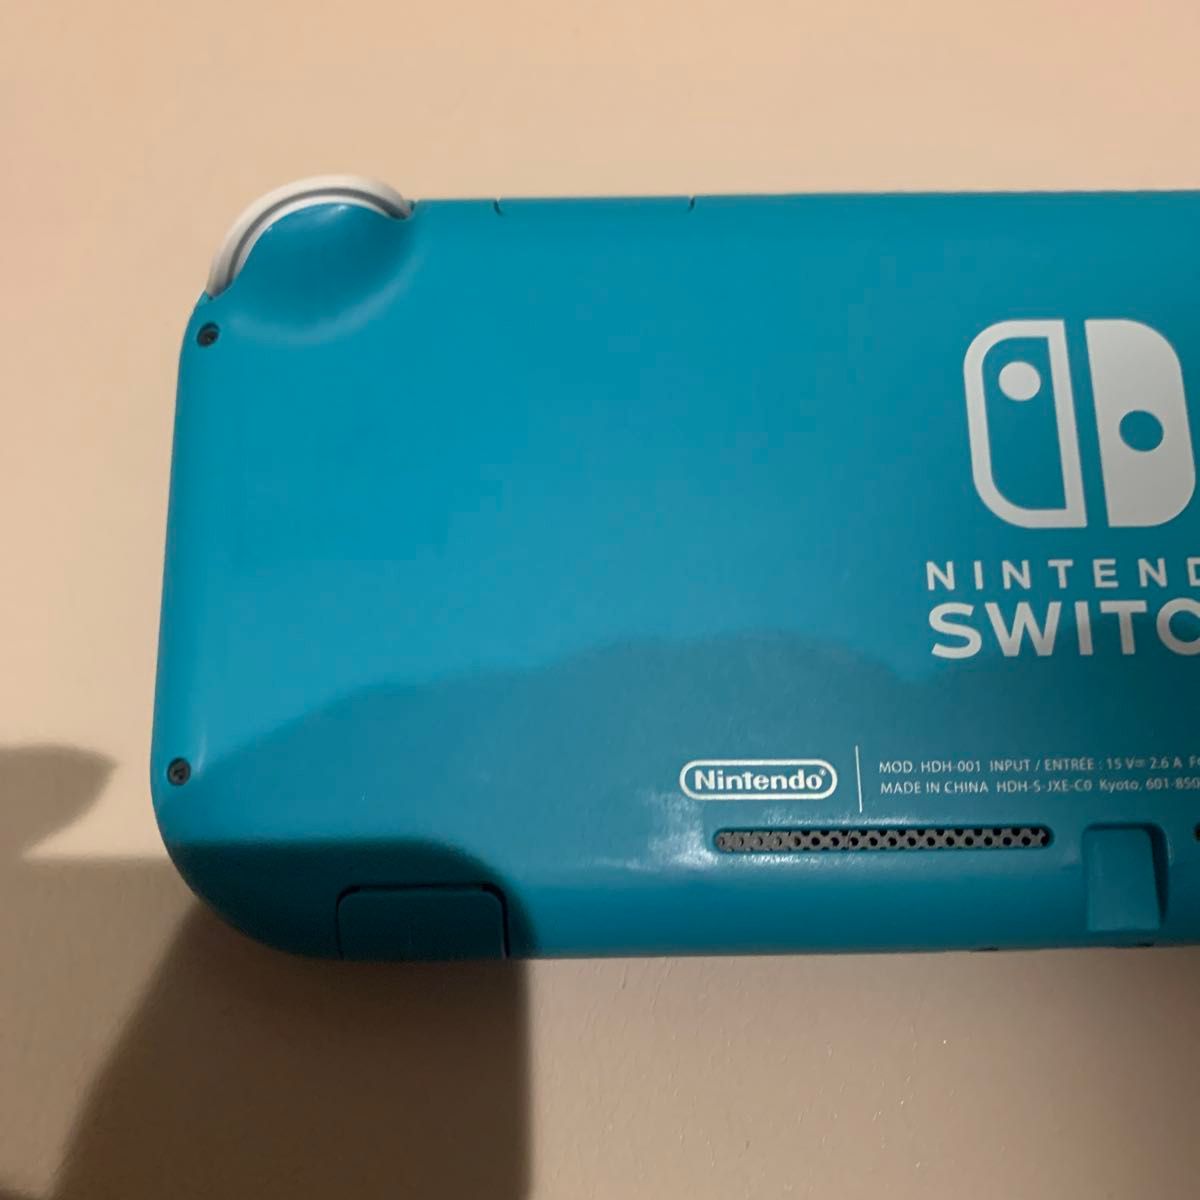 Nintendo Switch Lite ターコイズ ニンテンドースイッチライト